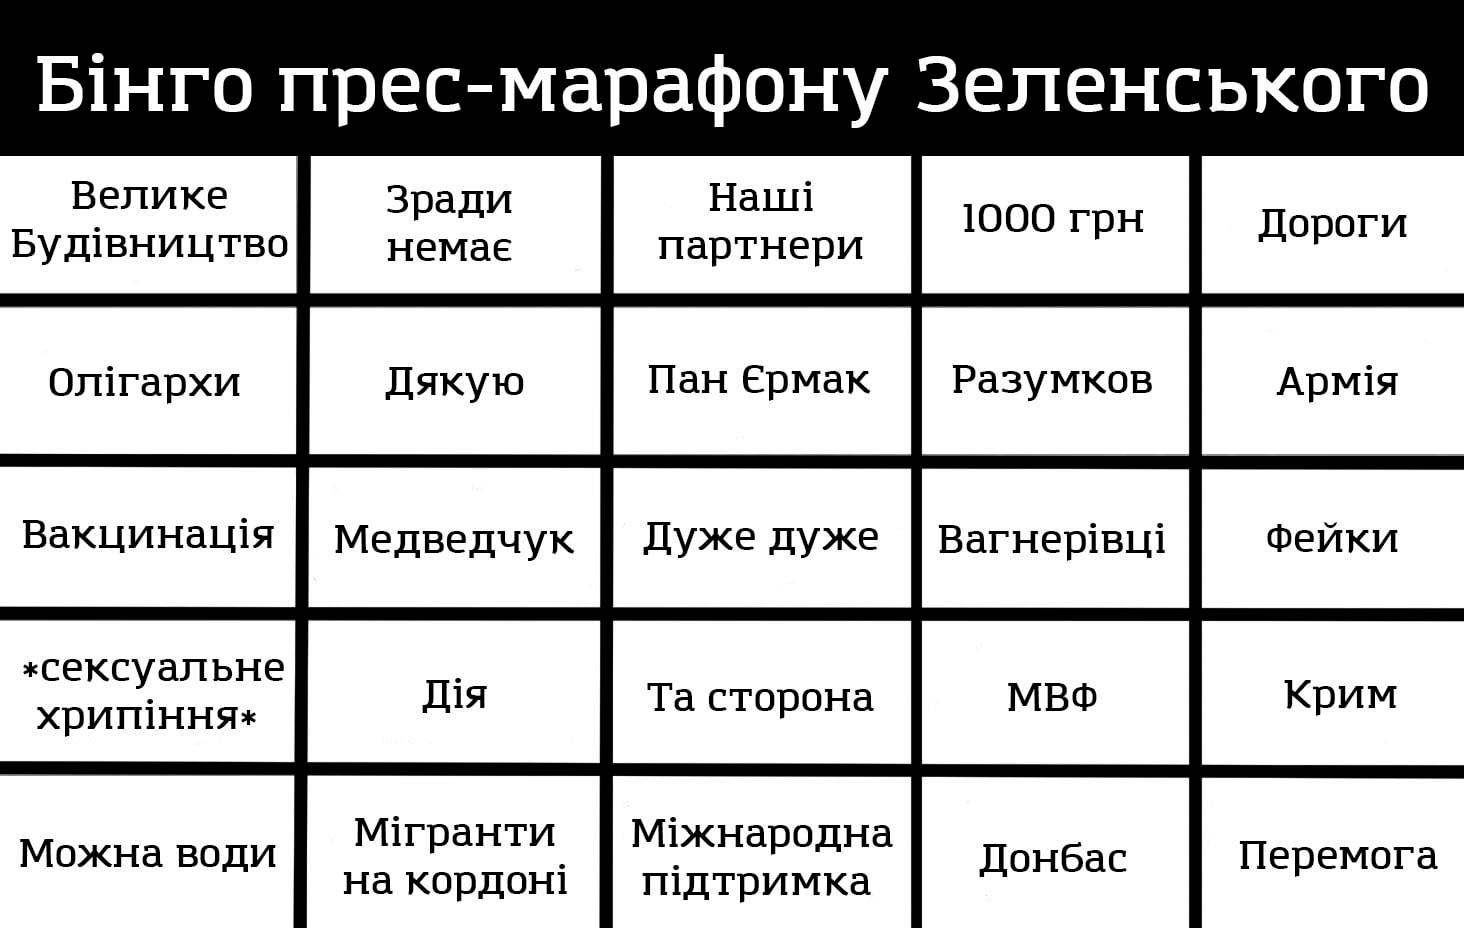 Как в соцсетях высмеяли пресс-марафон Зеленского: подборка лучших мемов - 4 - изображение